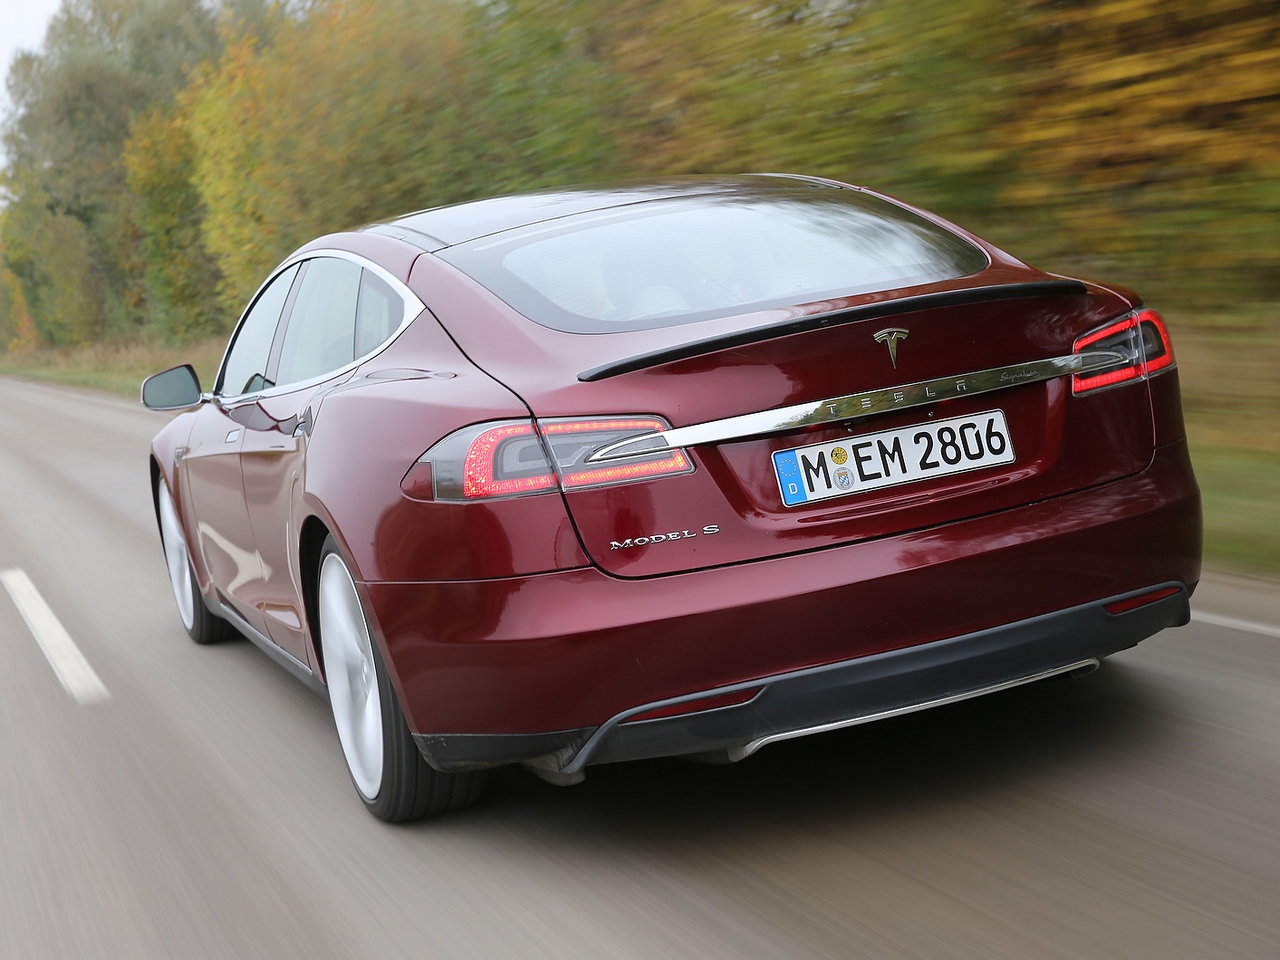 Tesla comienza a entregar los Model S a sus clientes europeos